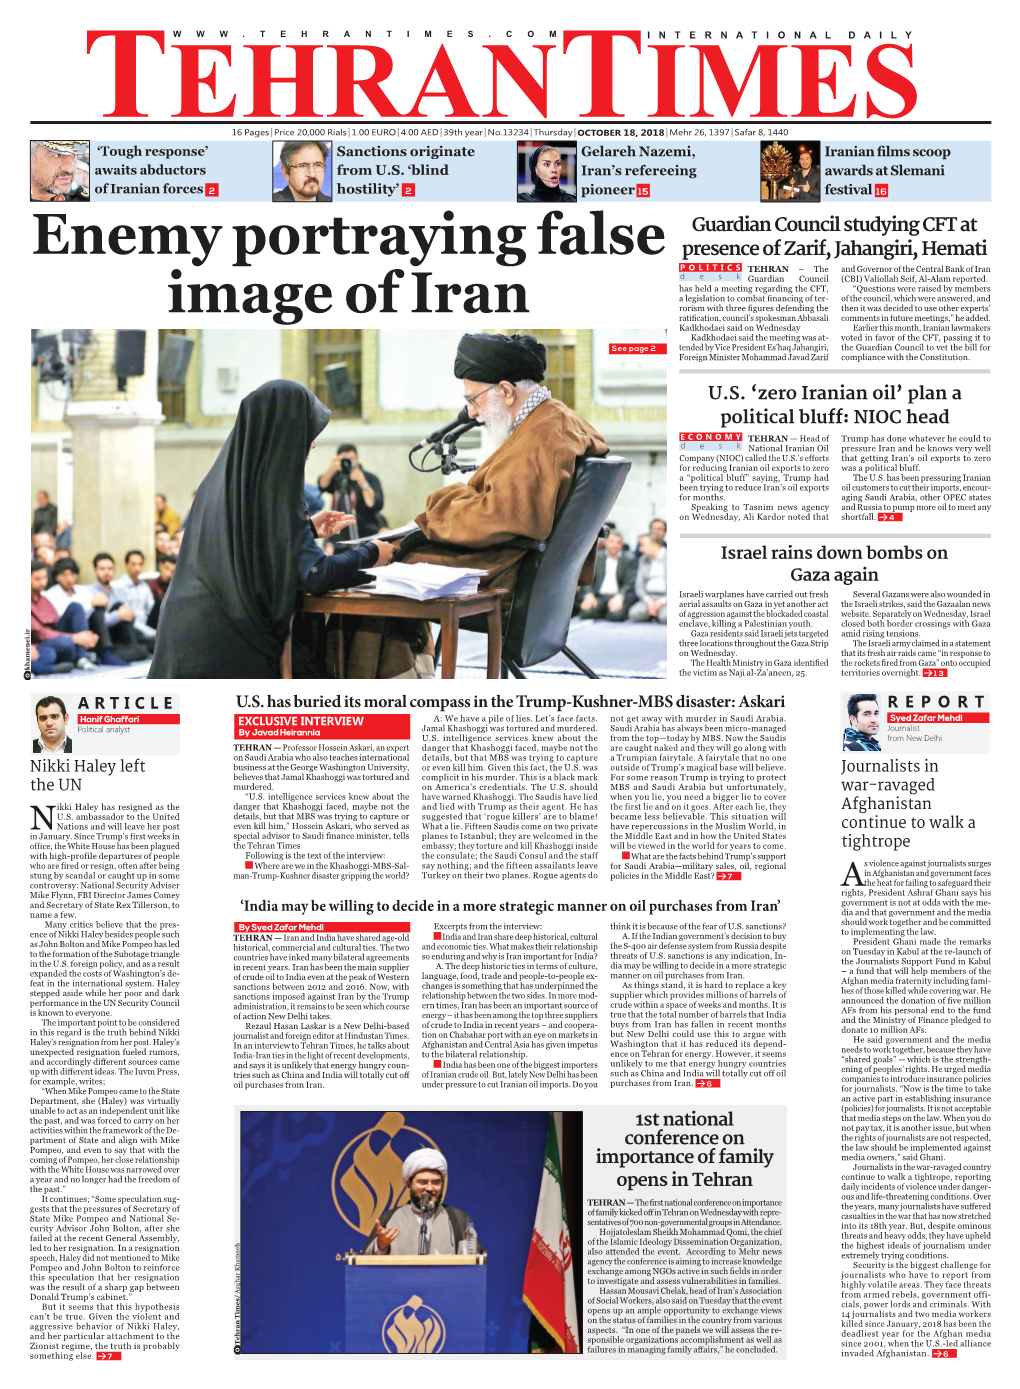 Enemy Portraying False Image of Iran